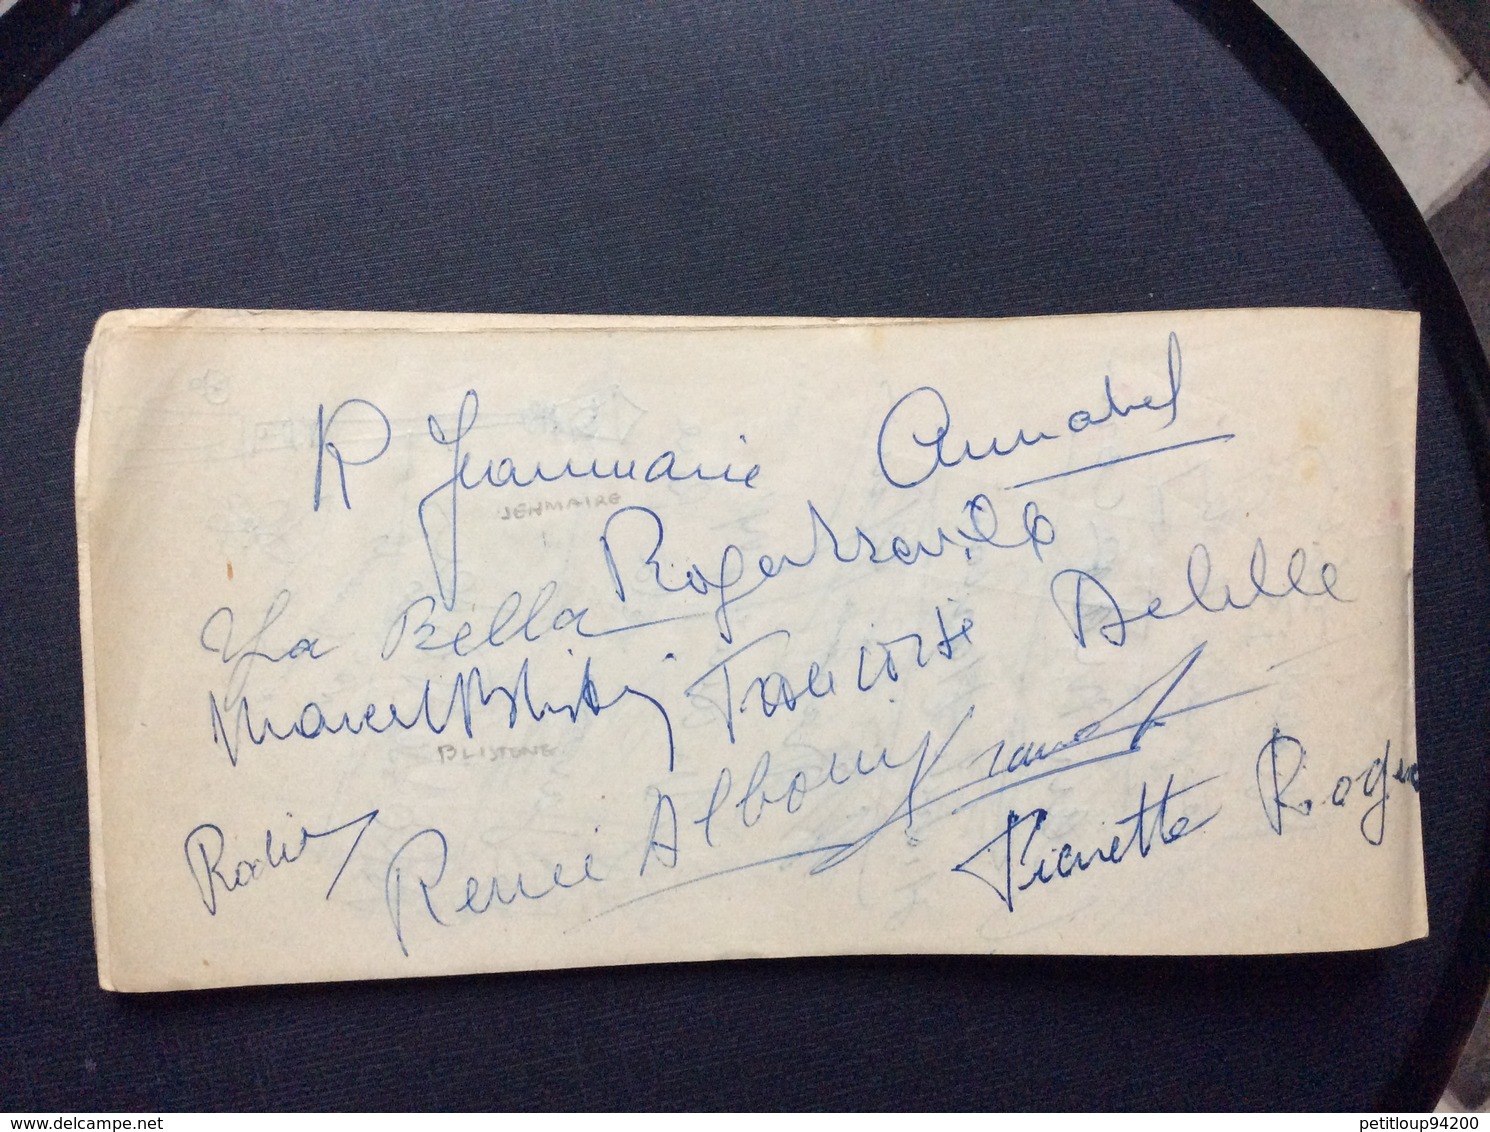 AIR FRANCE KERMESSE AIX ÉTOILES 1953 Autographes DADZU P.JOURDAN O.DEMAZIS CH.VANEL J.RICHARD ANDREX  Etc...